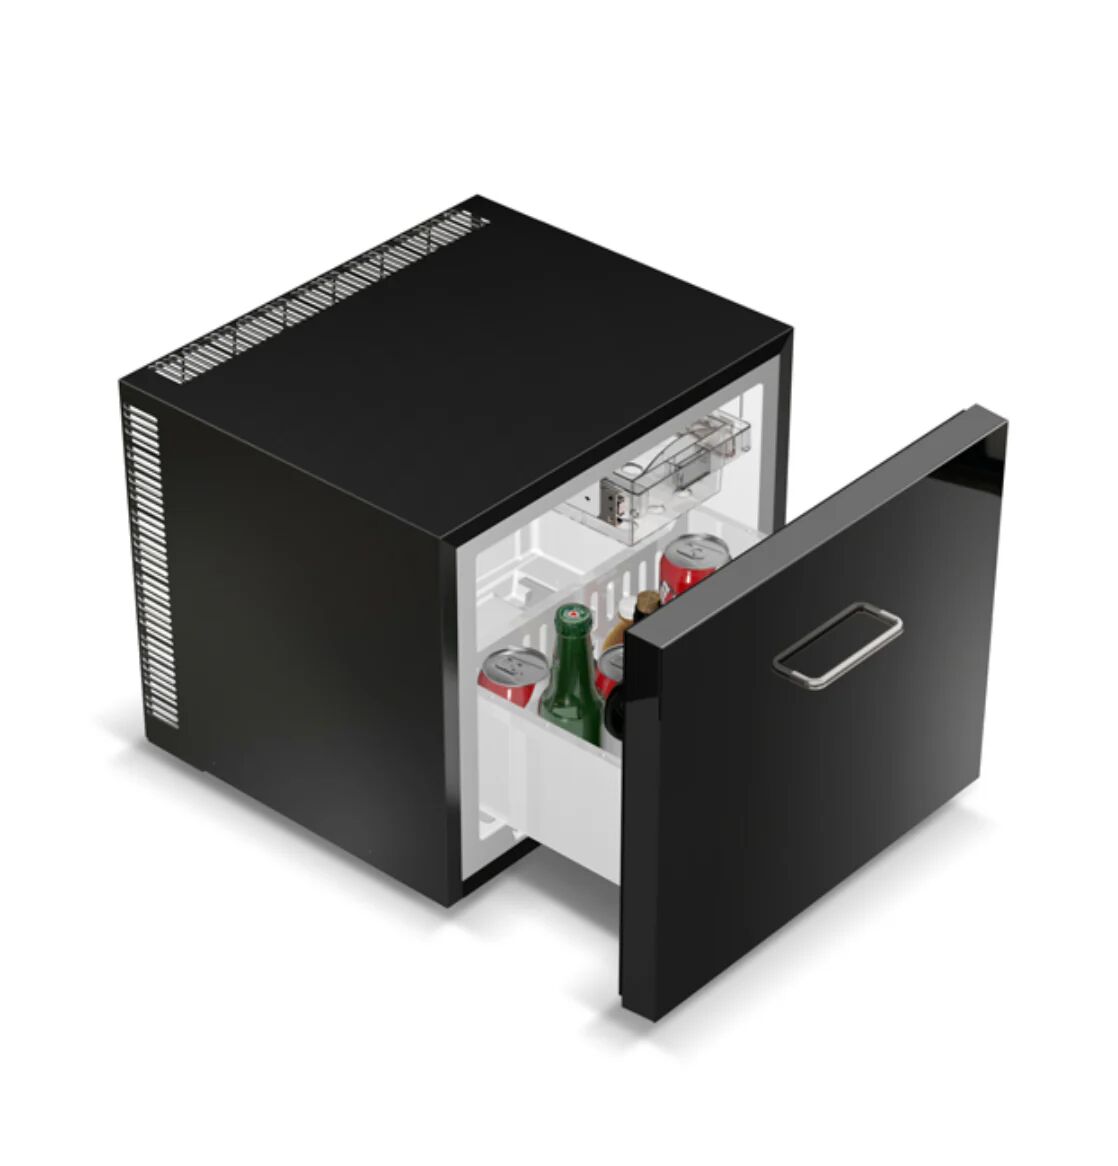 Ⓜ️🔵🔵🔵 Vitrifrigo TD45 - Minibar a cassetto termoelettrico, SUPERSILENZIOSO, pannello po